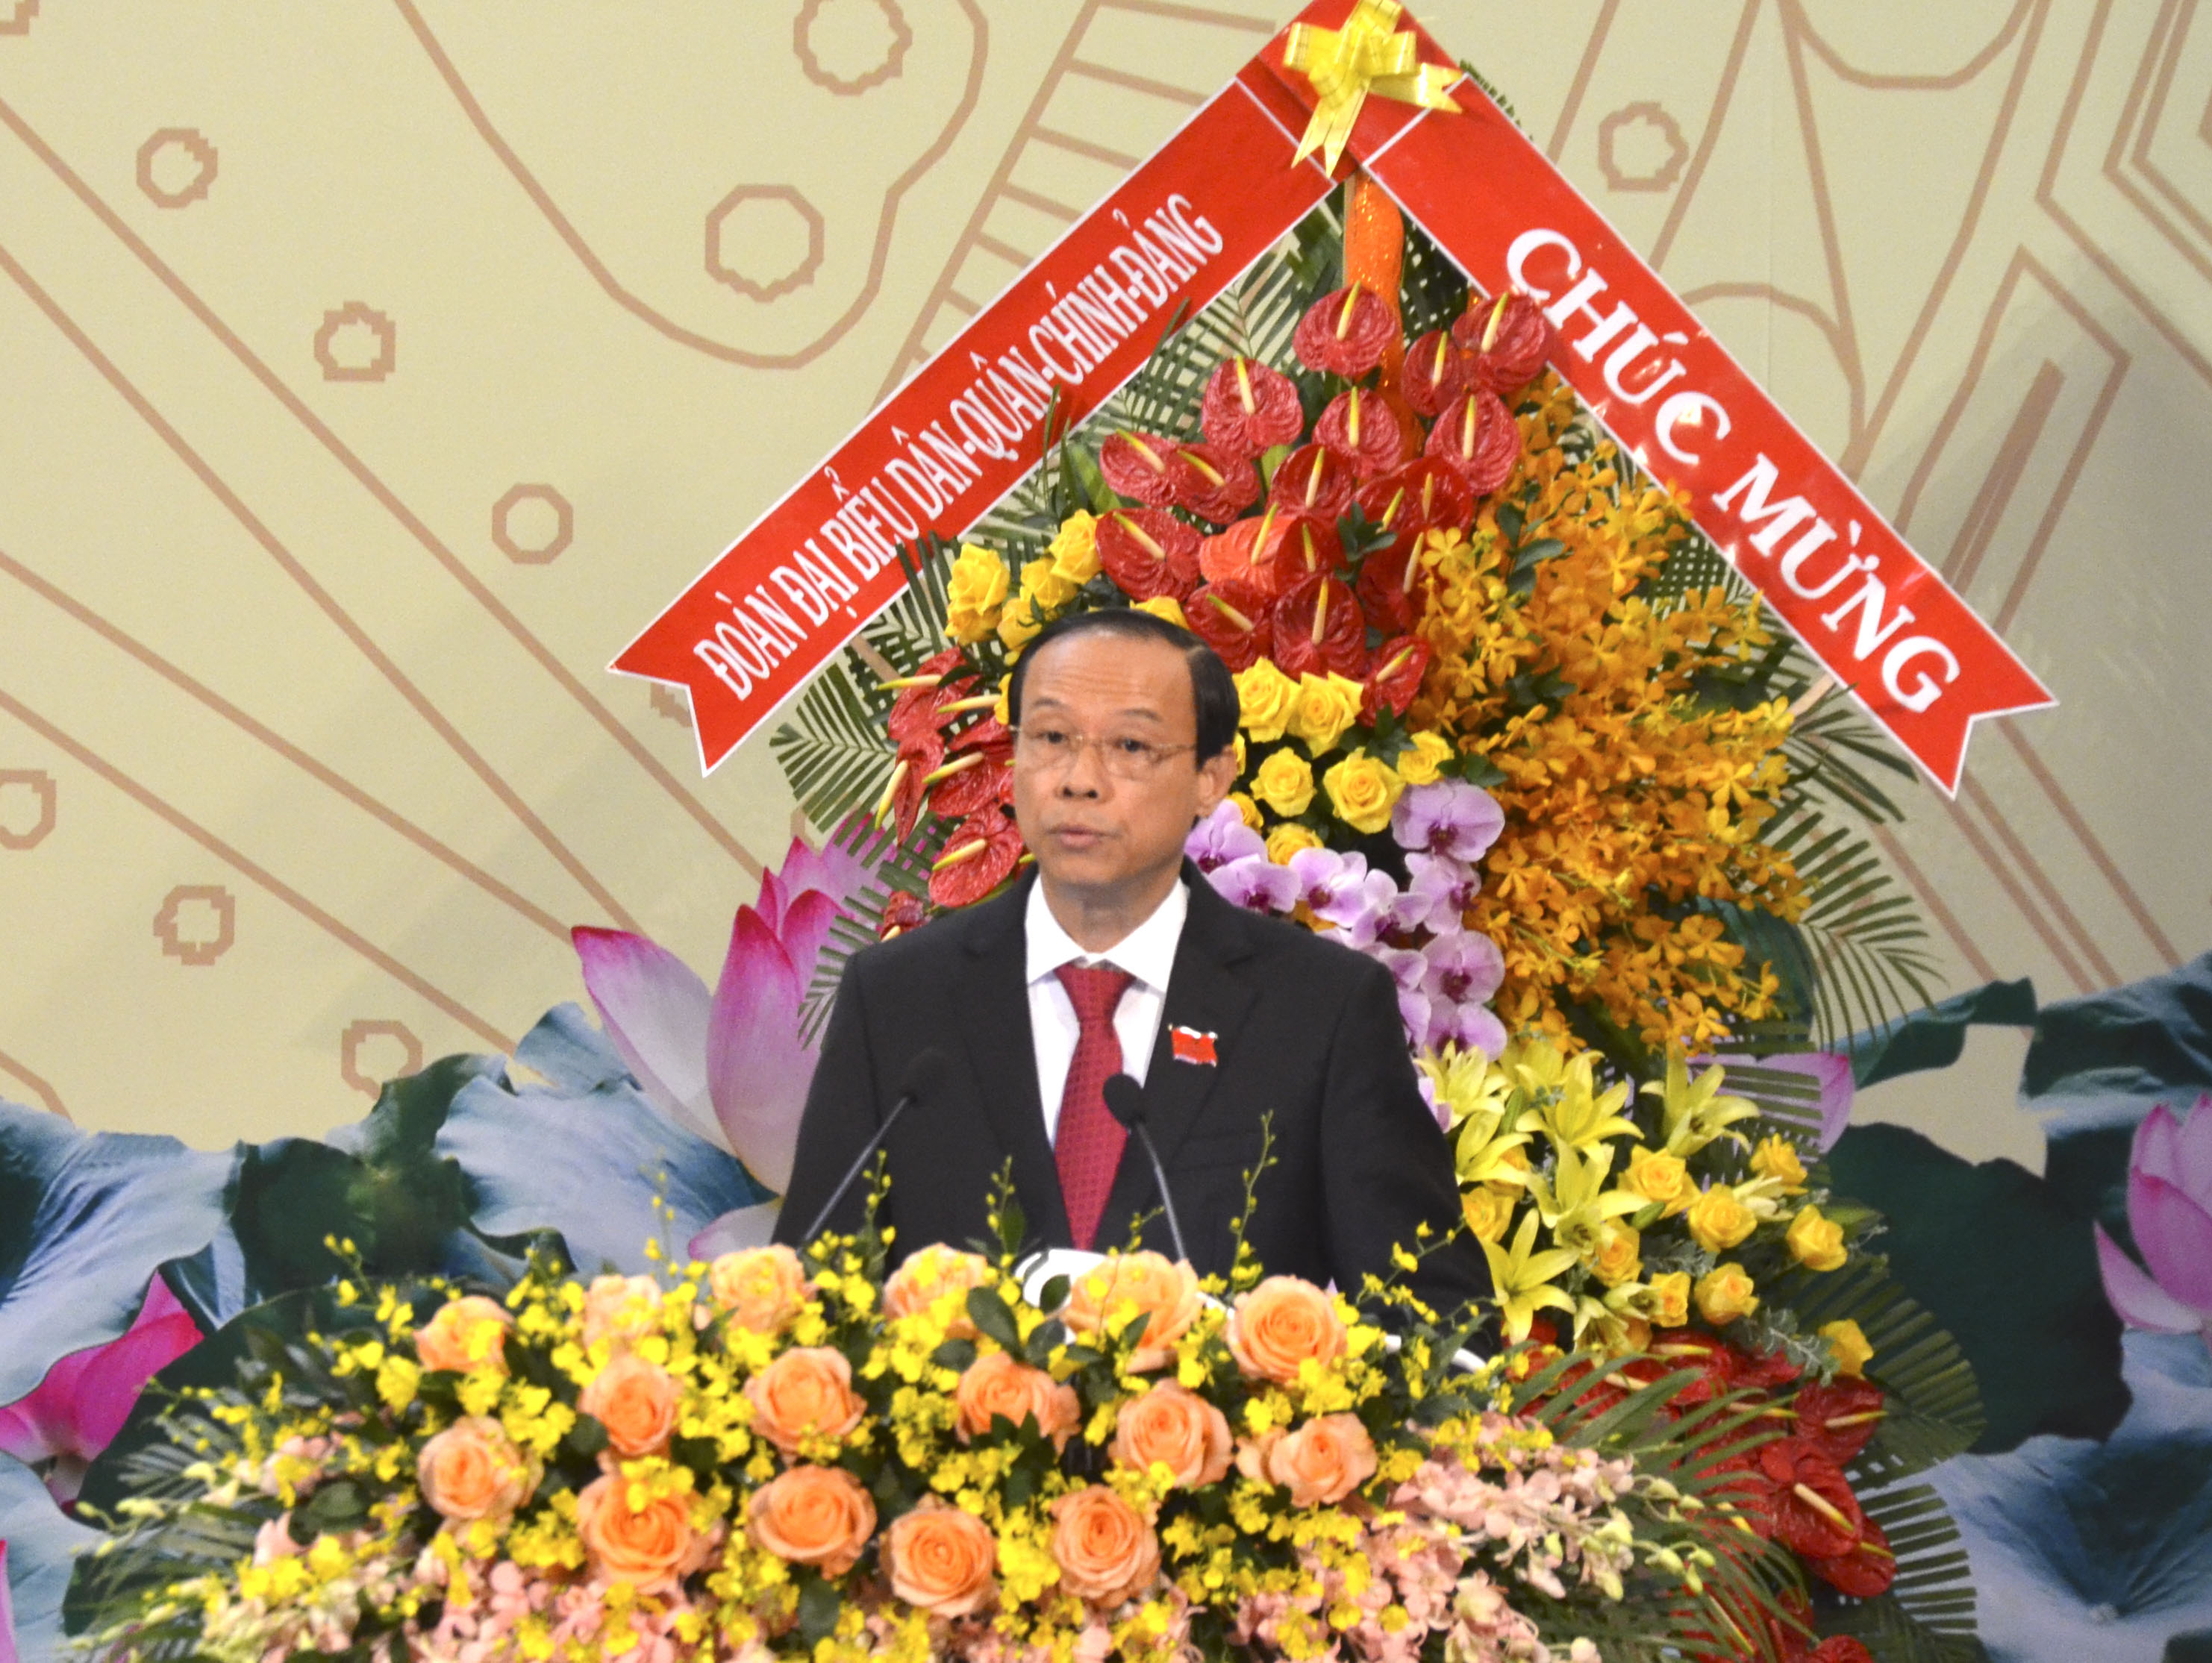 Đồng chí Nguyễn Văn Thọ, Phó Bí thư Tỉnh ủy, Chủ tịch UBND tỉnh trình bày Báo cáo kiểm điểm sự lãnh đạo của Ban Chấp hành Đảng bộ tỉnh khóa VI, nhiệm kỳ 2015-2020.